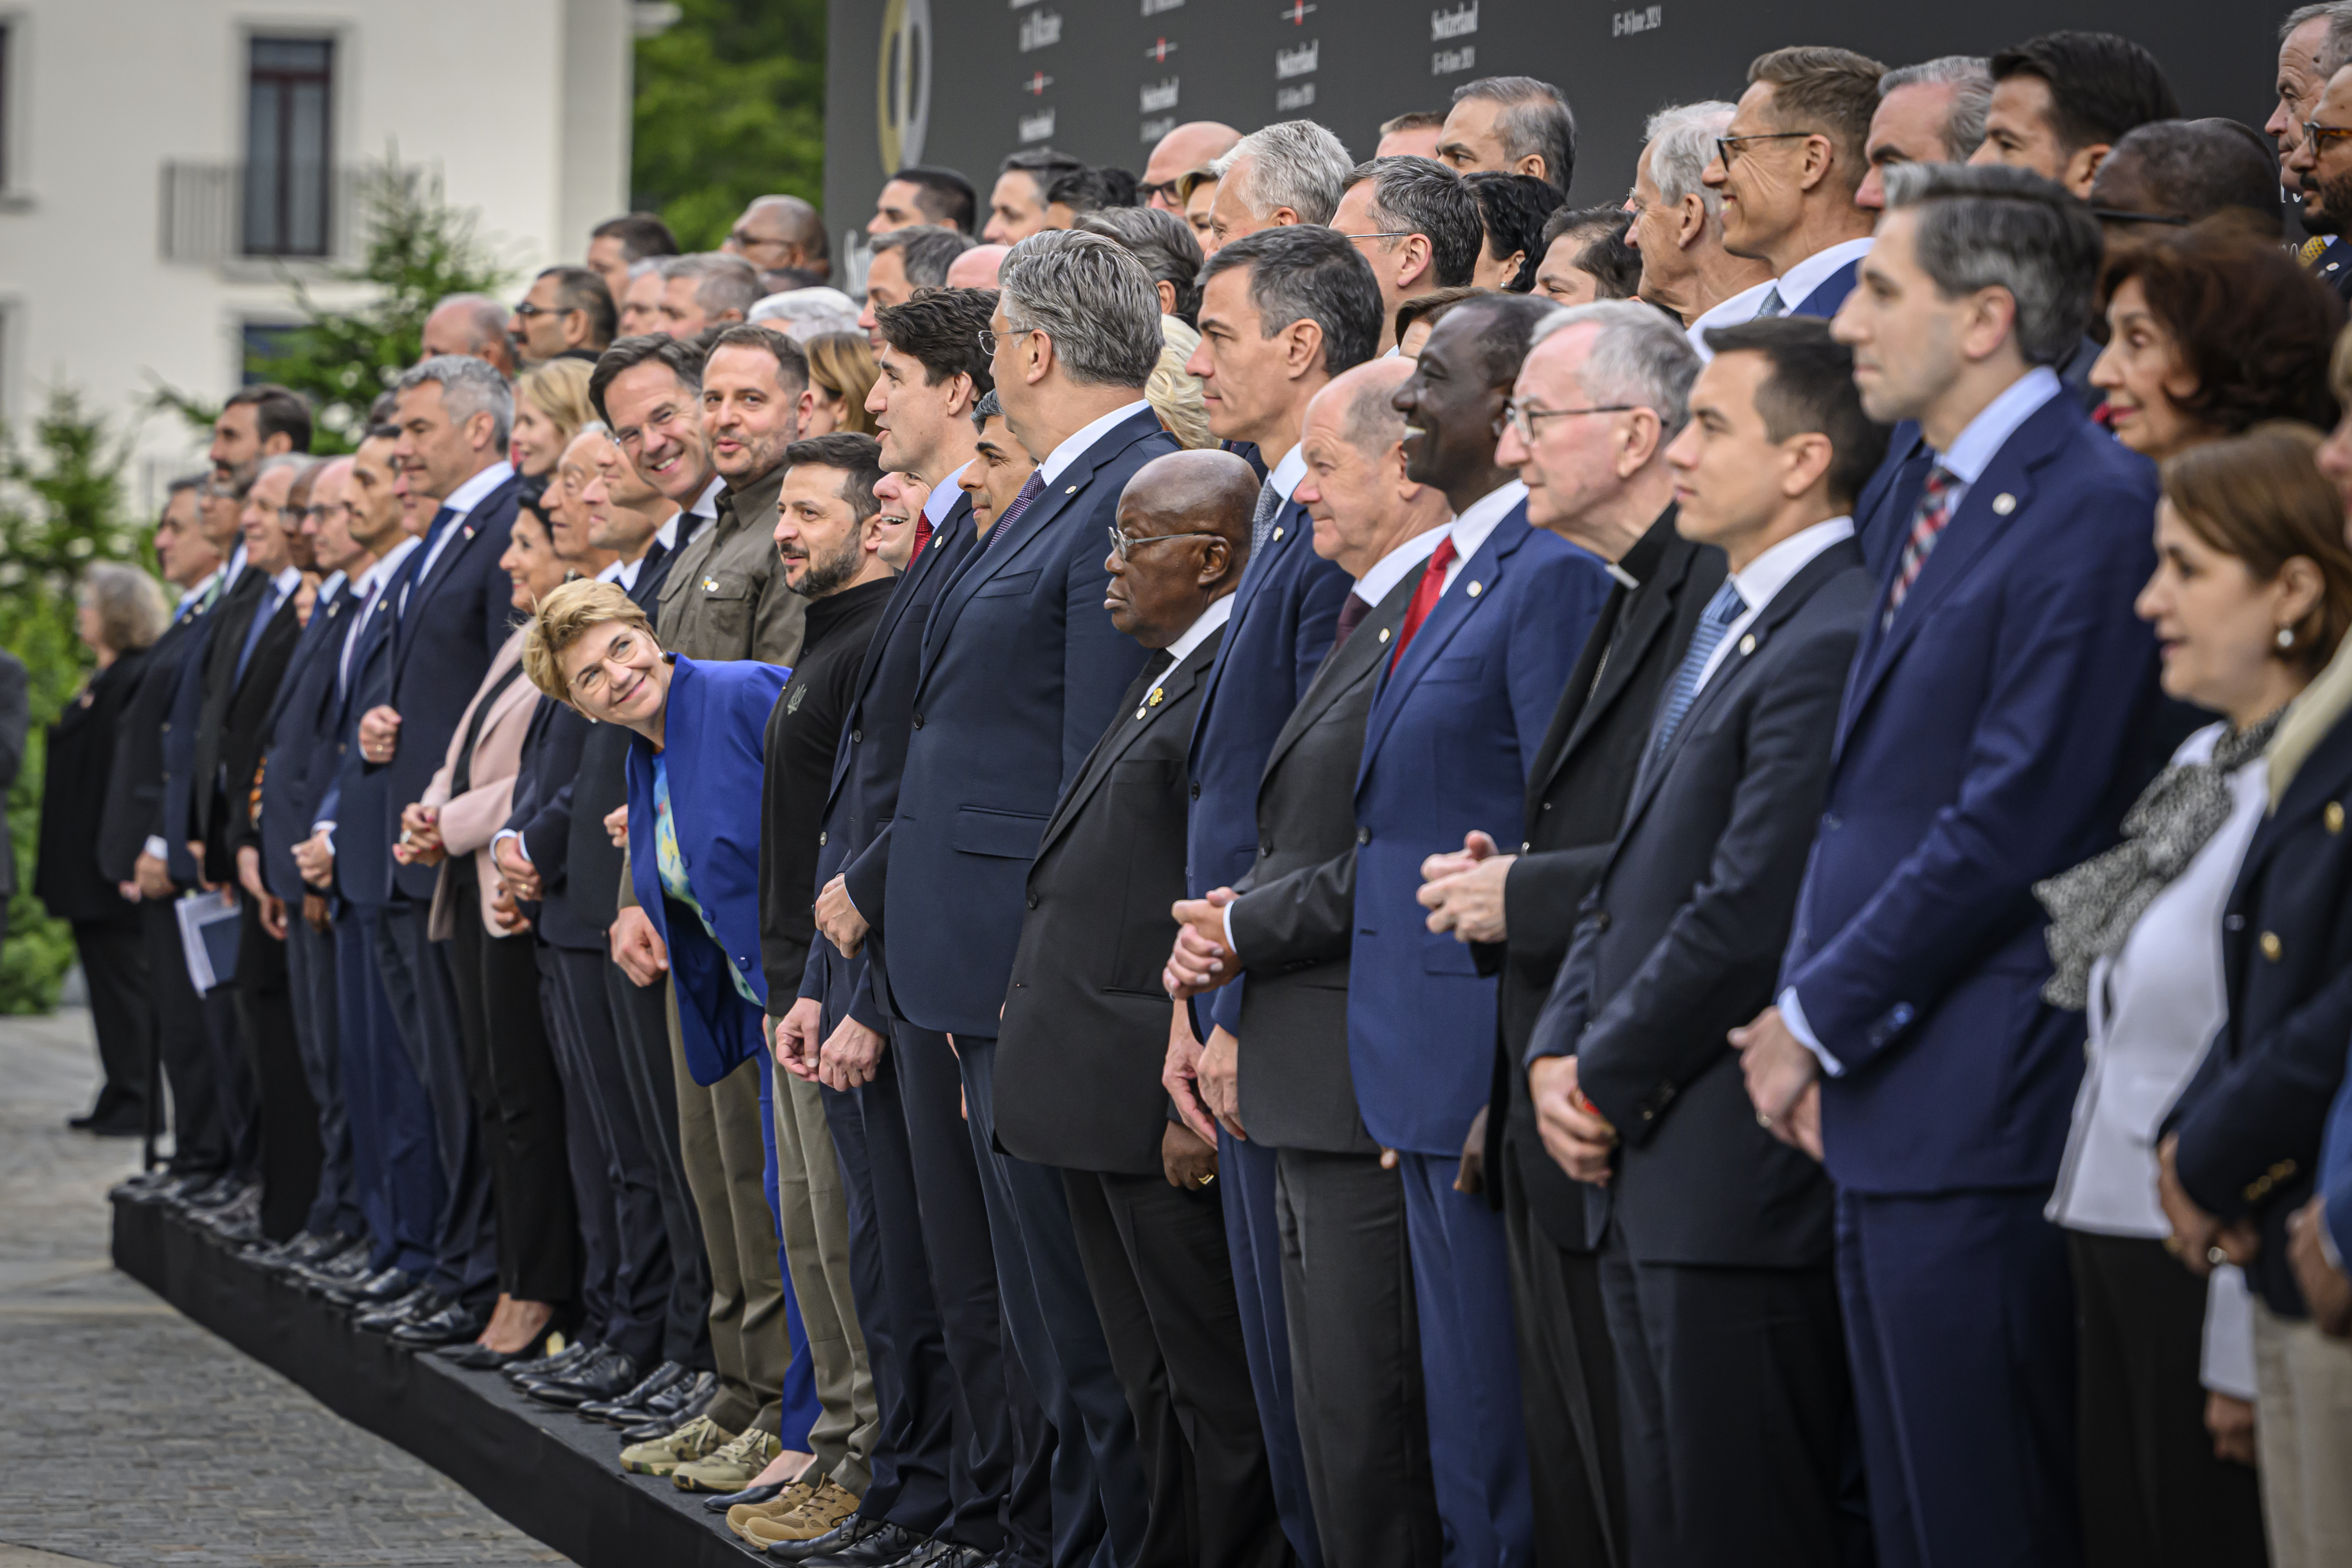 هل سنلتقي مرّة أخرى؟ الرئيسة السويسرية، فيولا أمهيرد (منحنية)، وهي محاطة بزعامات الدول يوم السبت 15 يونيو 2024.